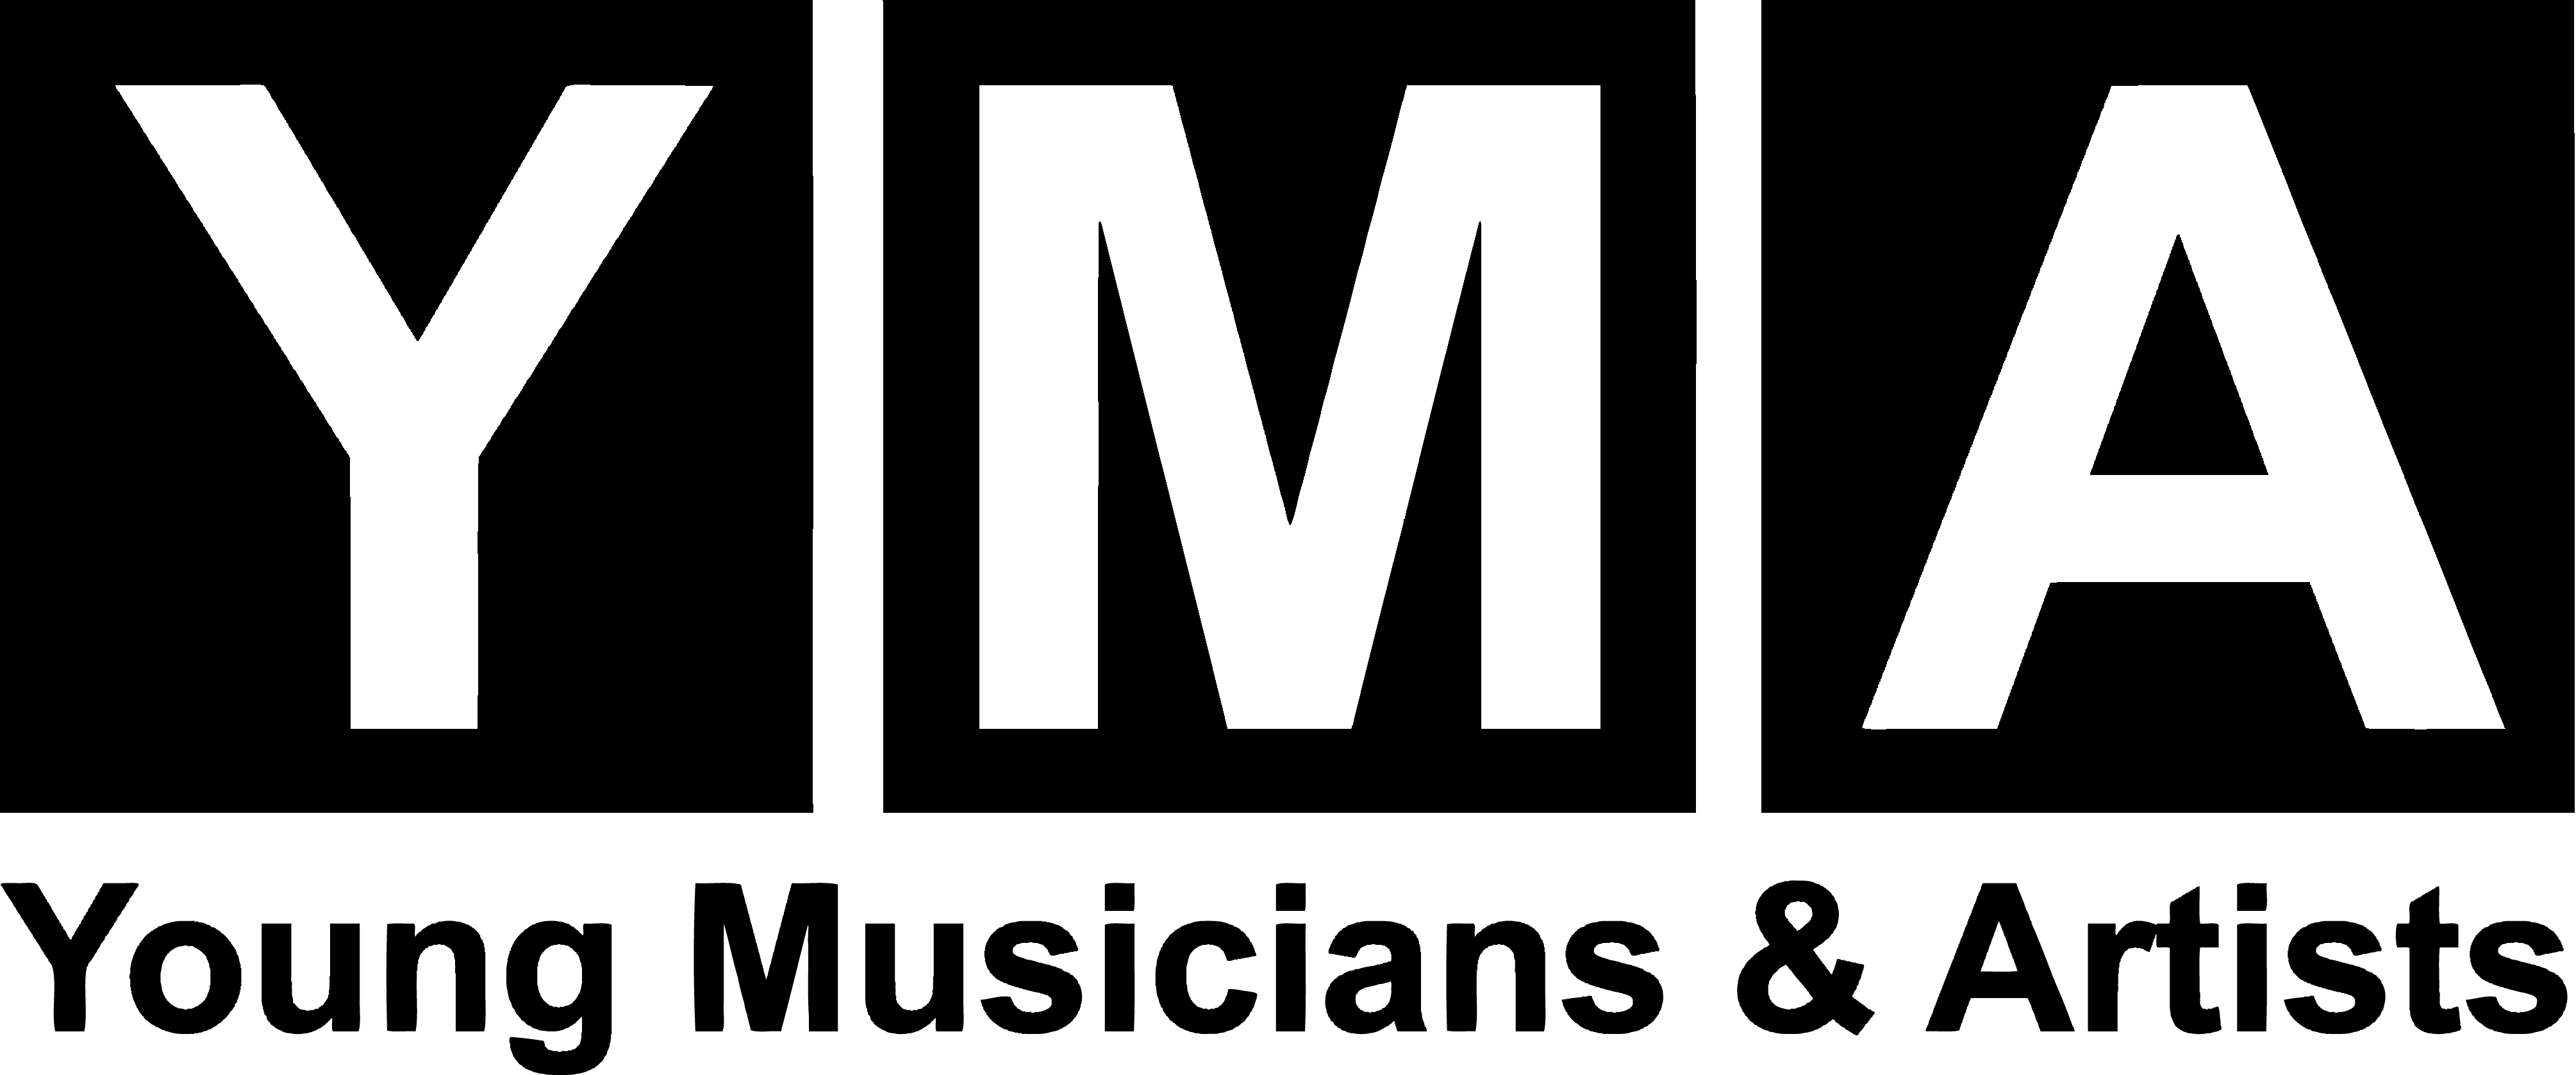 Yma Logo - Young Musicians & Artists Cultural TrustOregon Cultural Trust